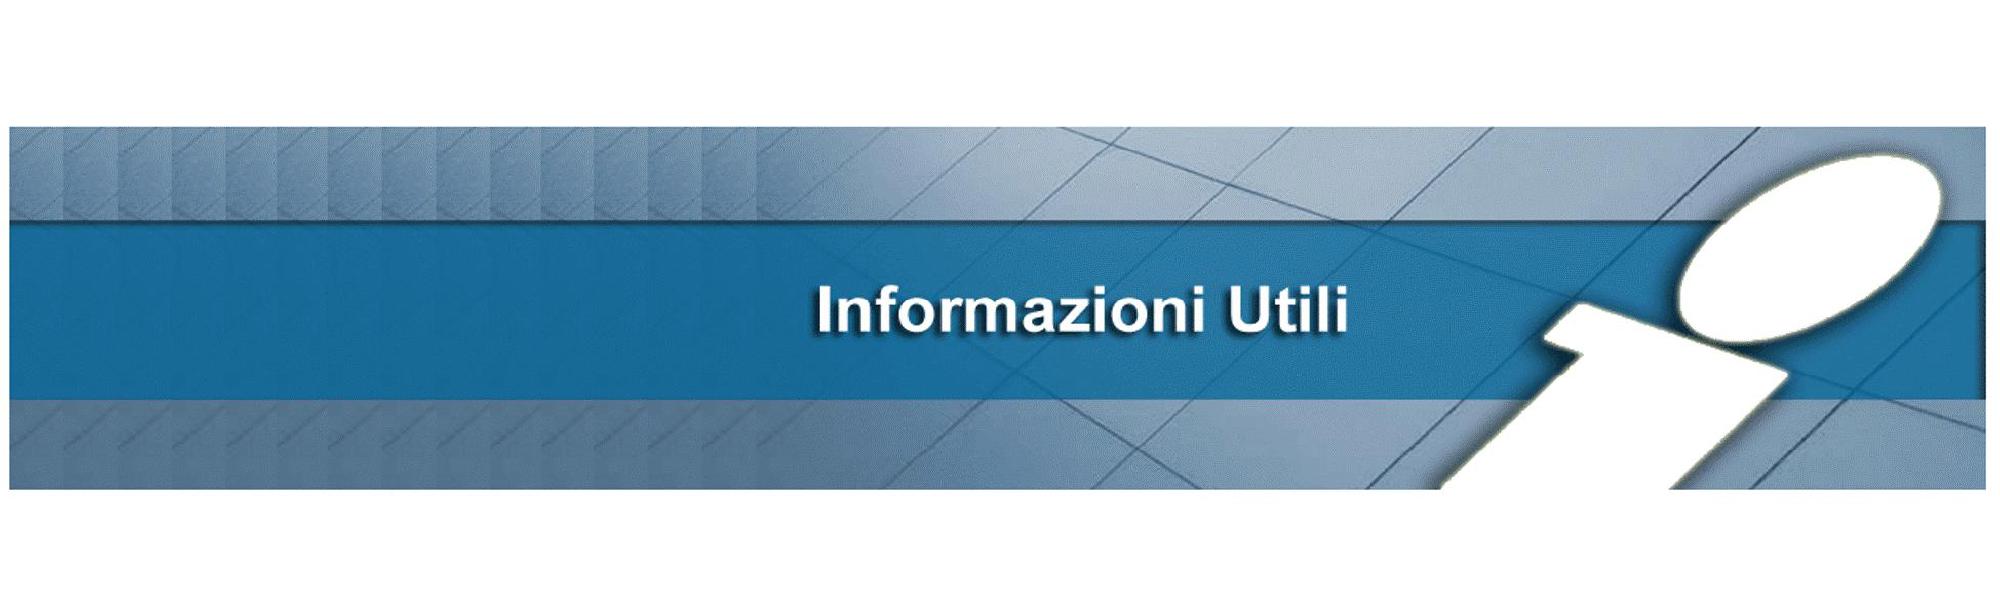 Ostuni in Puglia Informazioni Utili, Ufficio informazioni Turistiche, Trasporti Treni e Autobus - Agriturismo Salinola Puglia  0